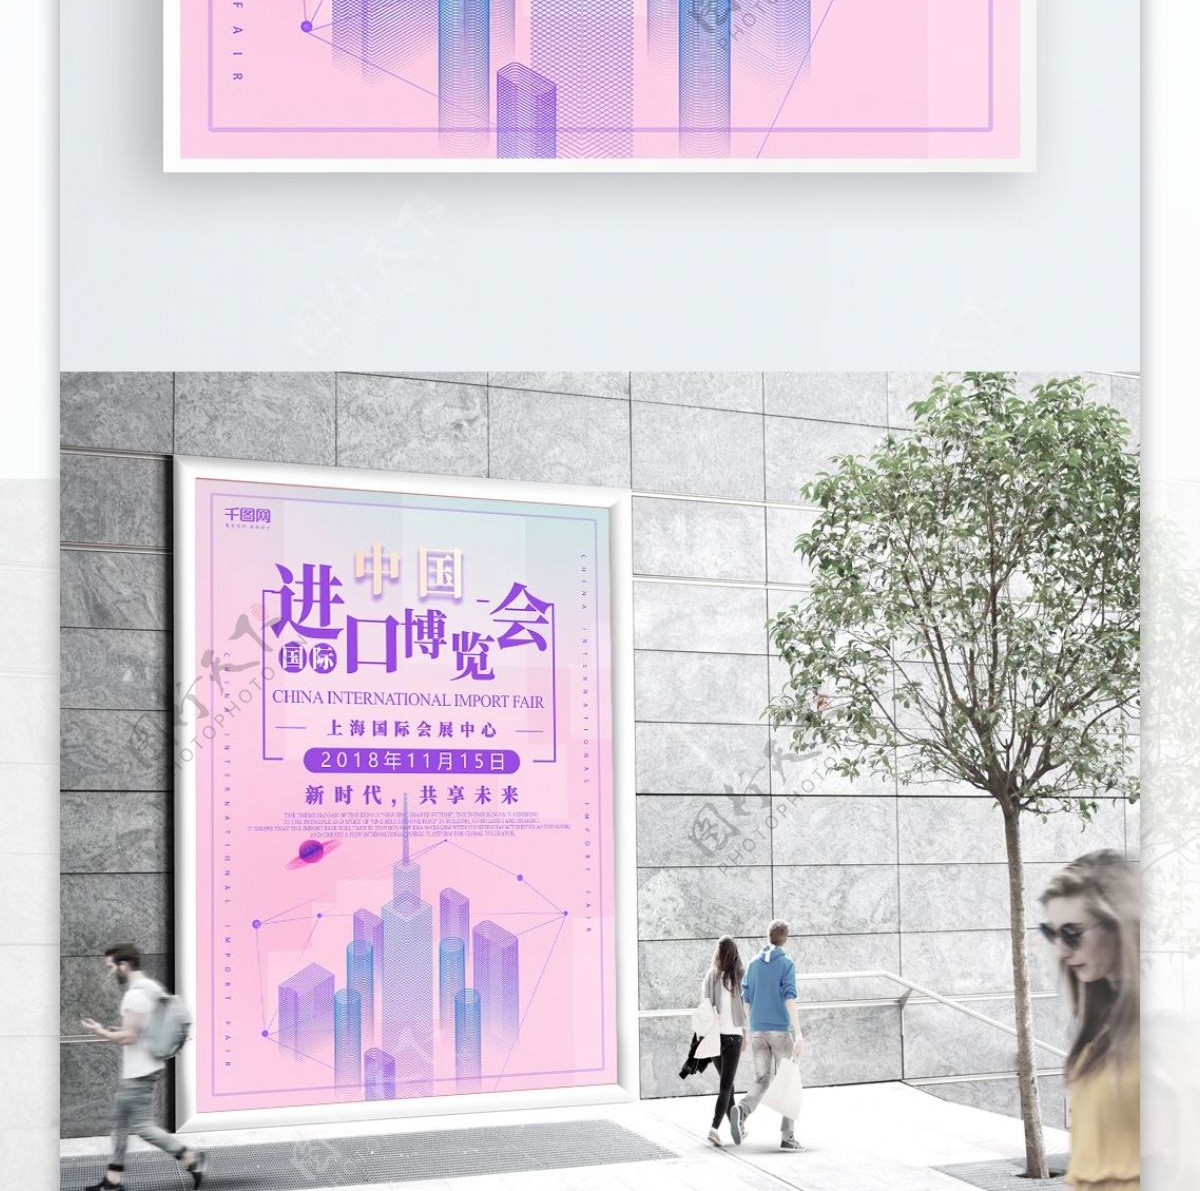 原创简约炫酷中国国际进口博览会海报